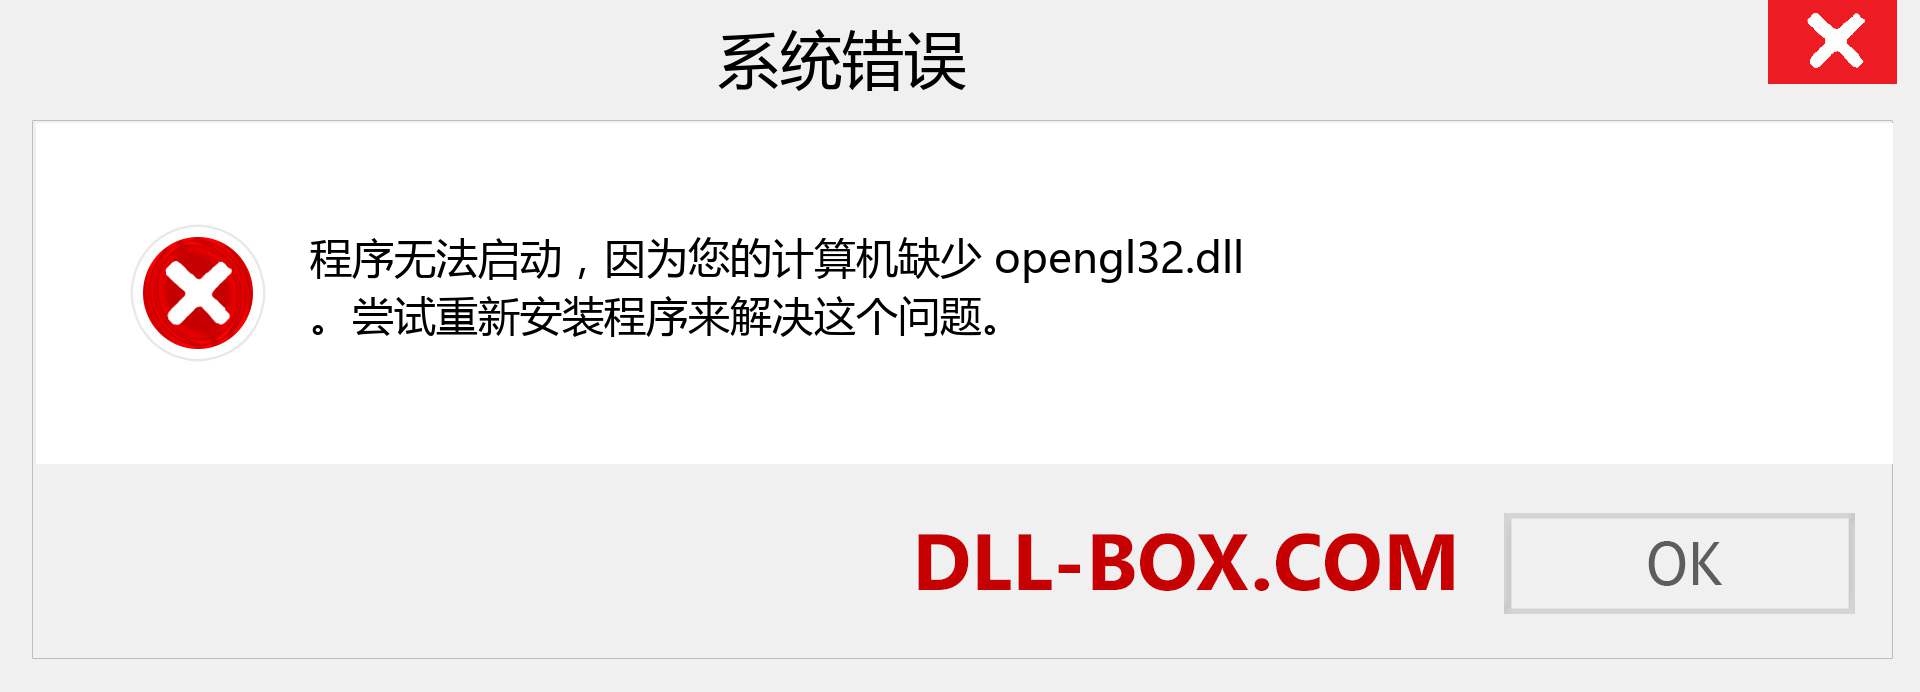 opengl32.dll 文件丢失？。 适用于 Windows 7、8、10 的下载 - 修复 Windows、照片、图像上的 opengl32 dll 丢失错误